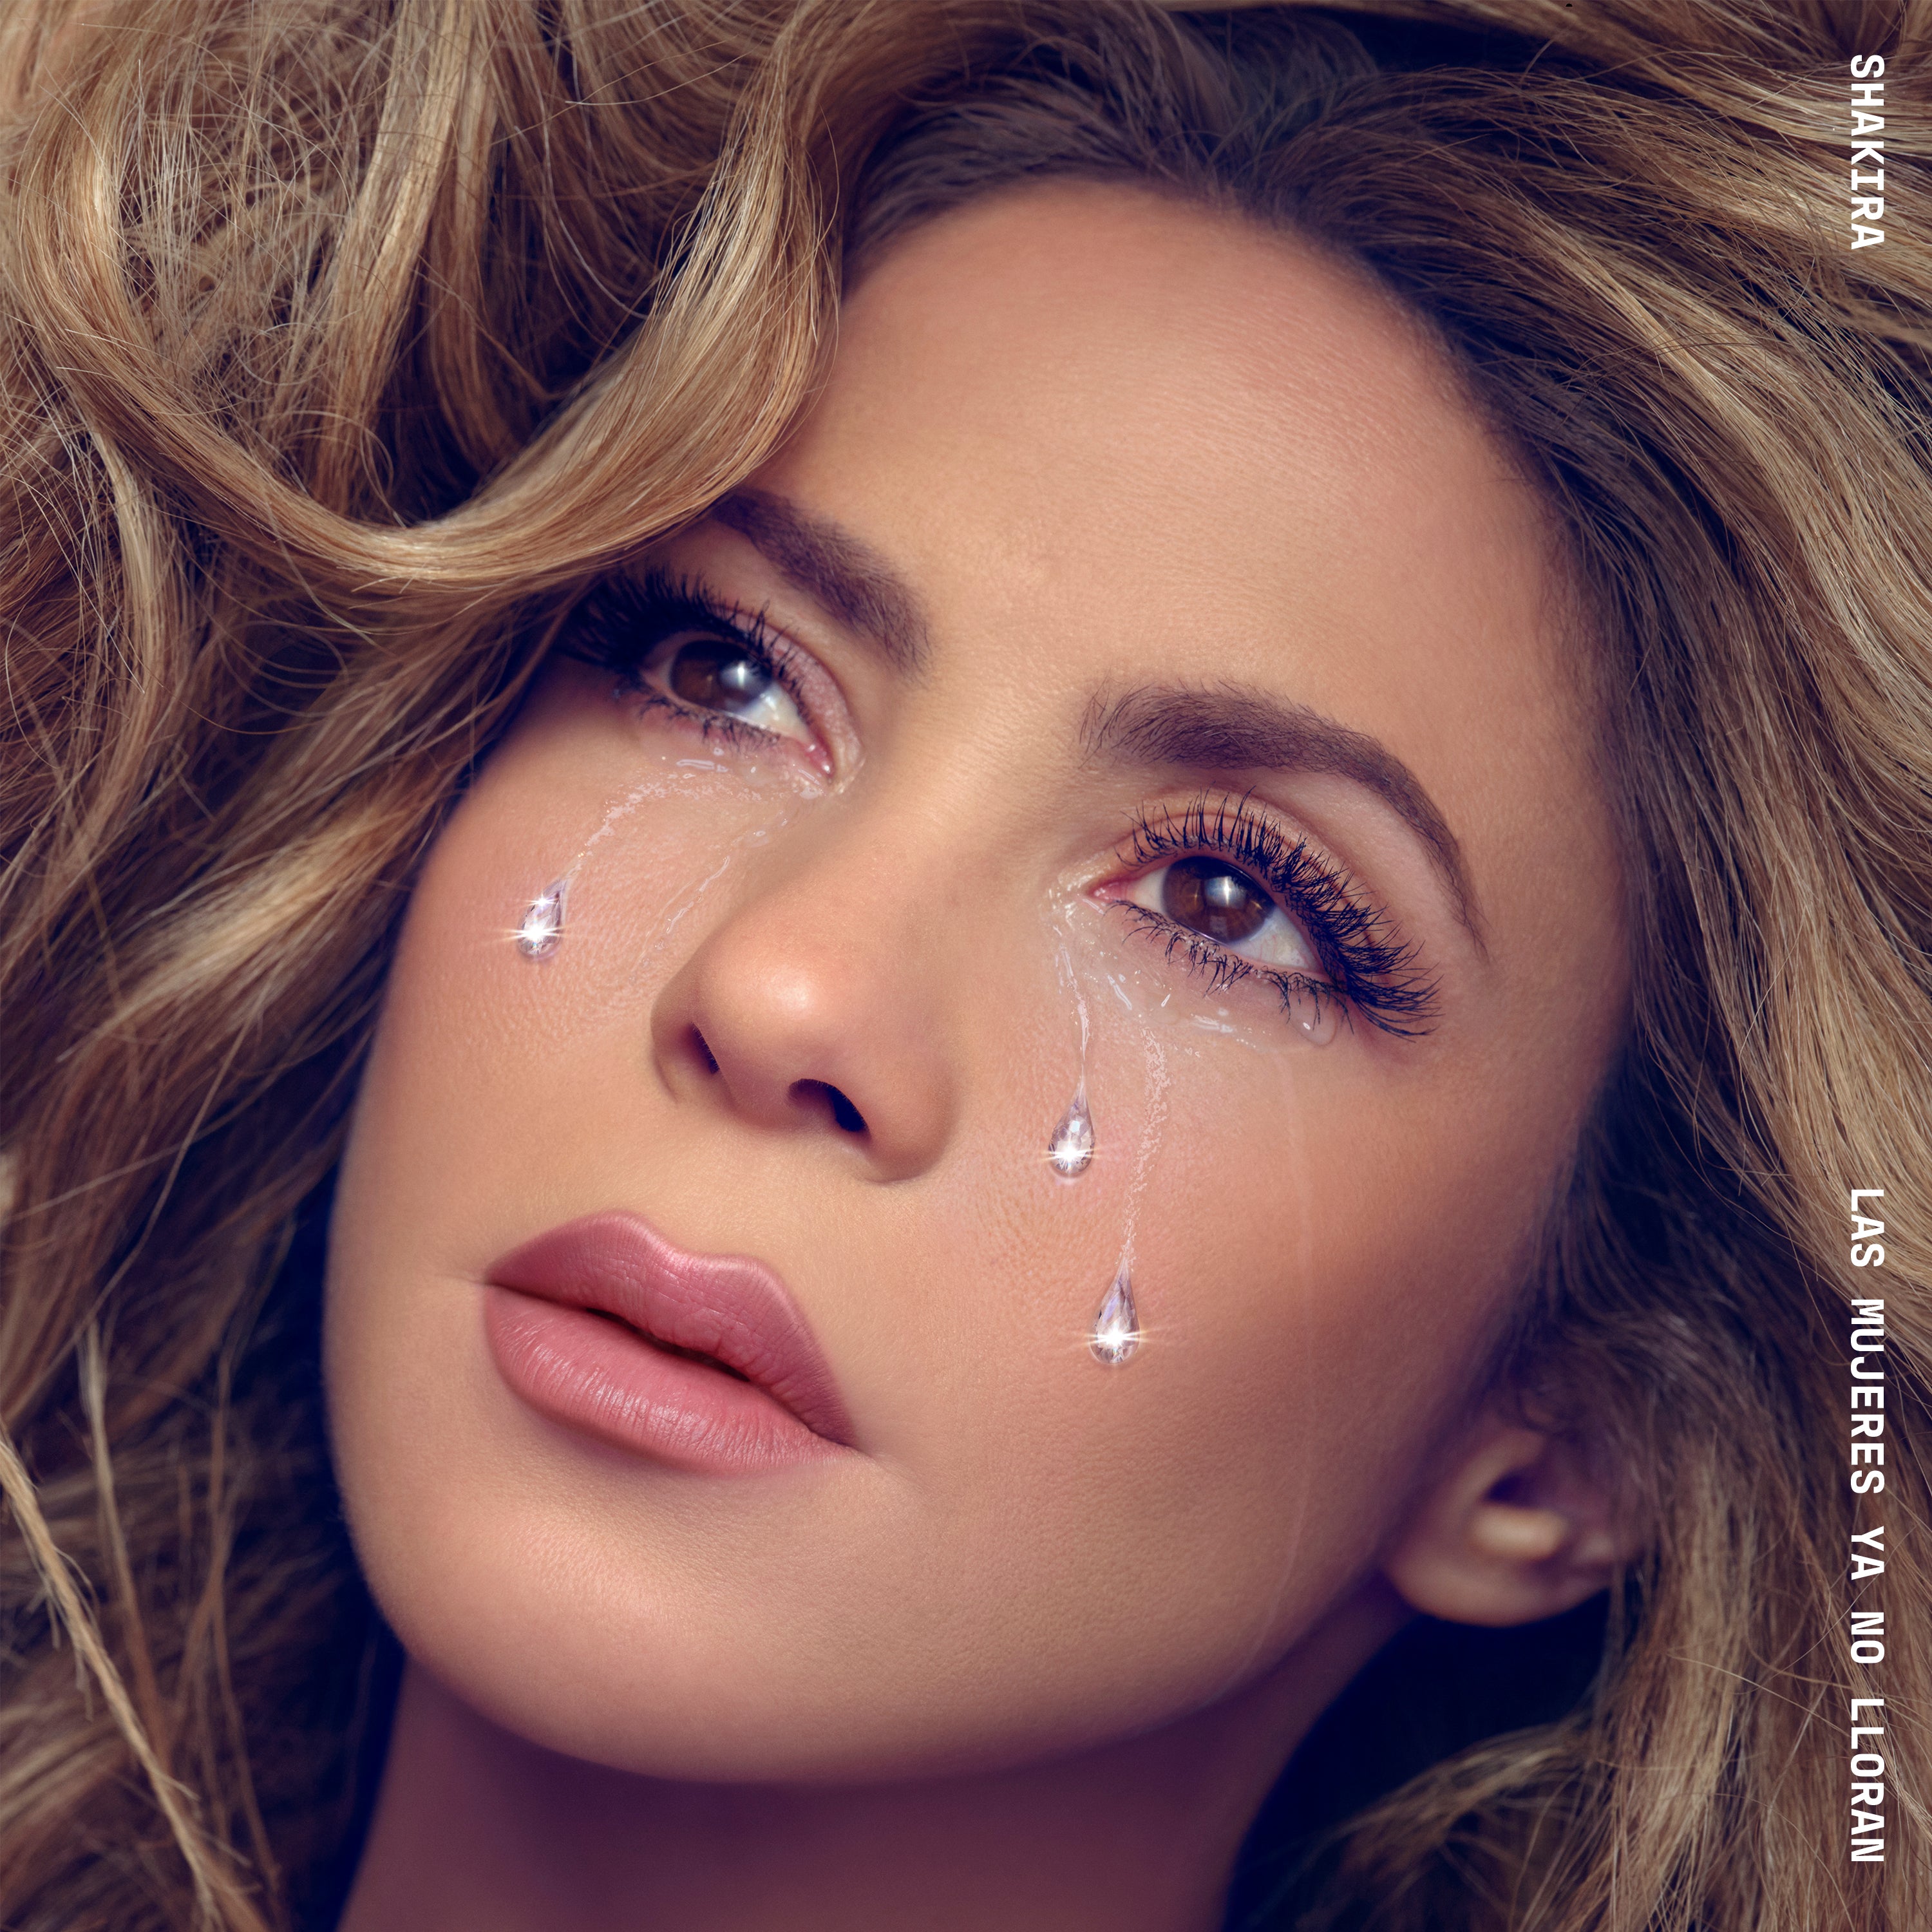 LPX2 Shakira - Las mujeres ya no lloran